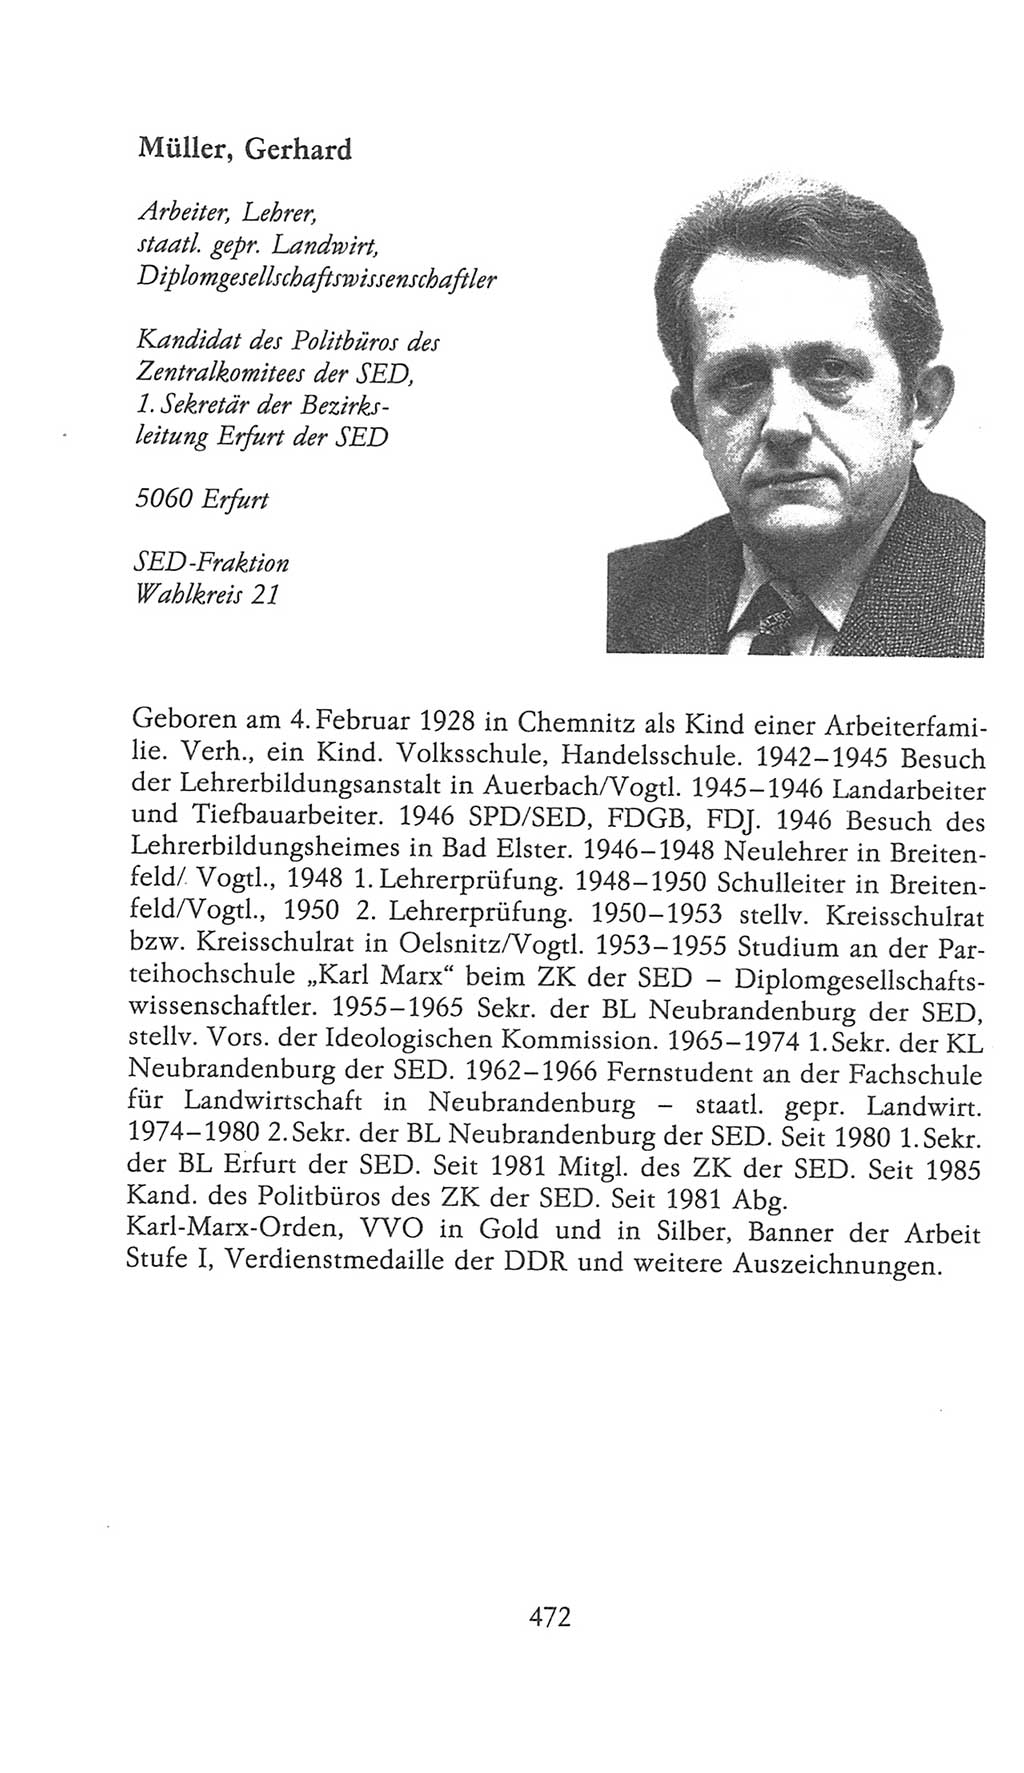 Volkskammer (VK) der Deutschen Demokratischen Republik (DDR), 9. Wahlperiode 1986-1990, Seite 472 (VK. DDR 9. WP. 1986-1990, S. 472)